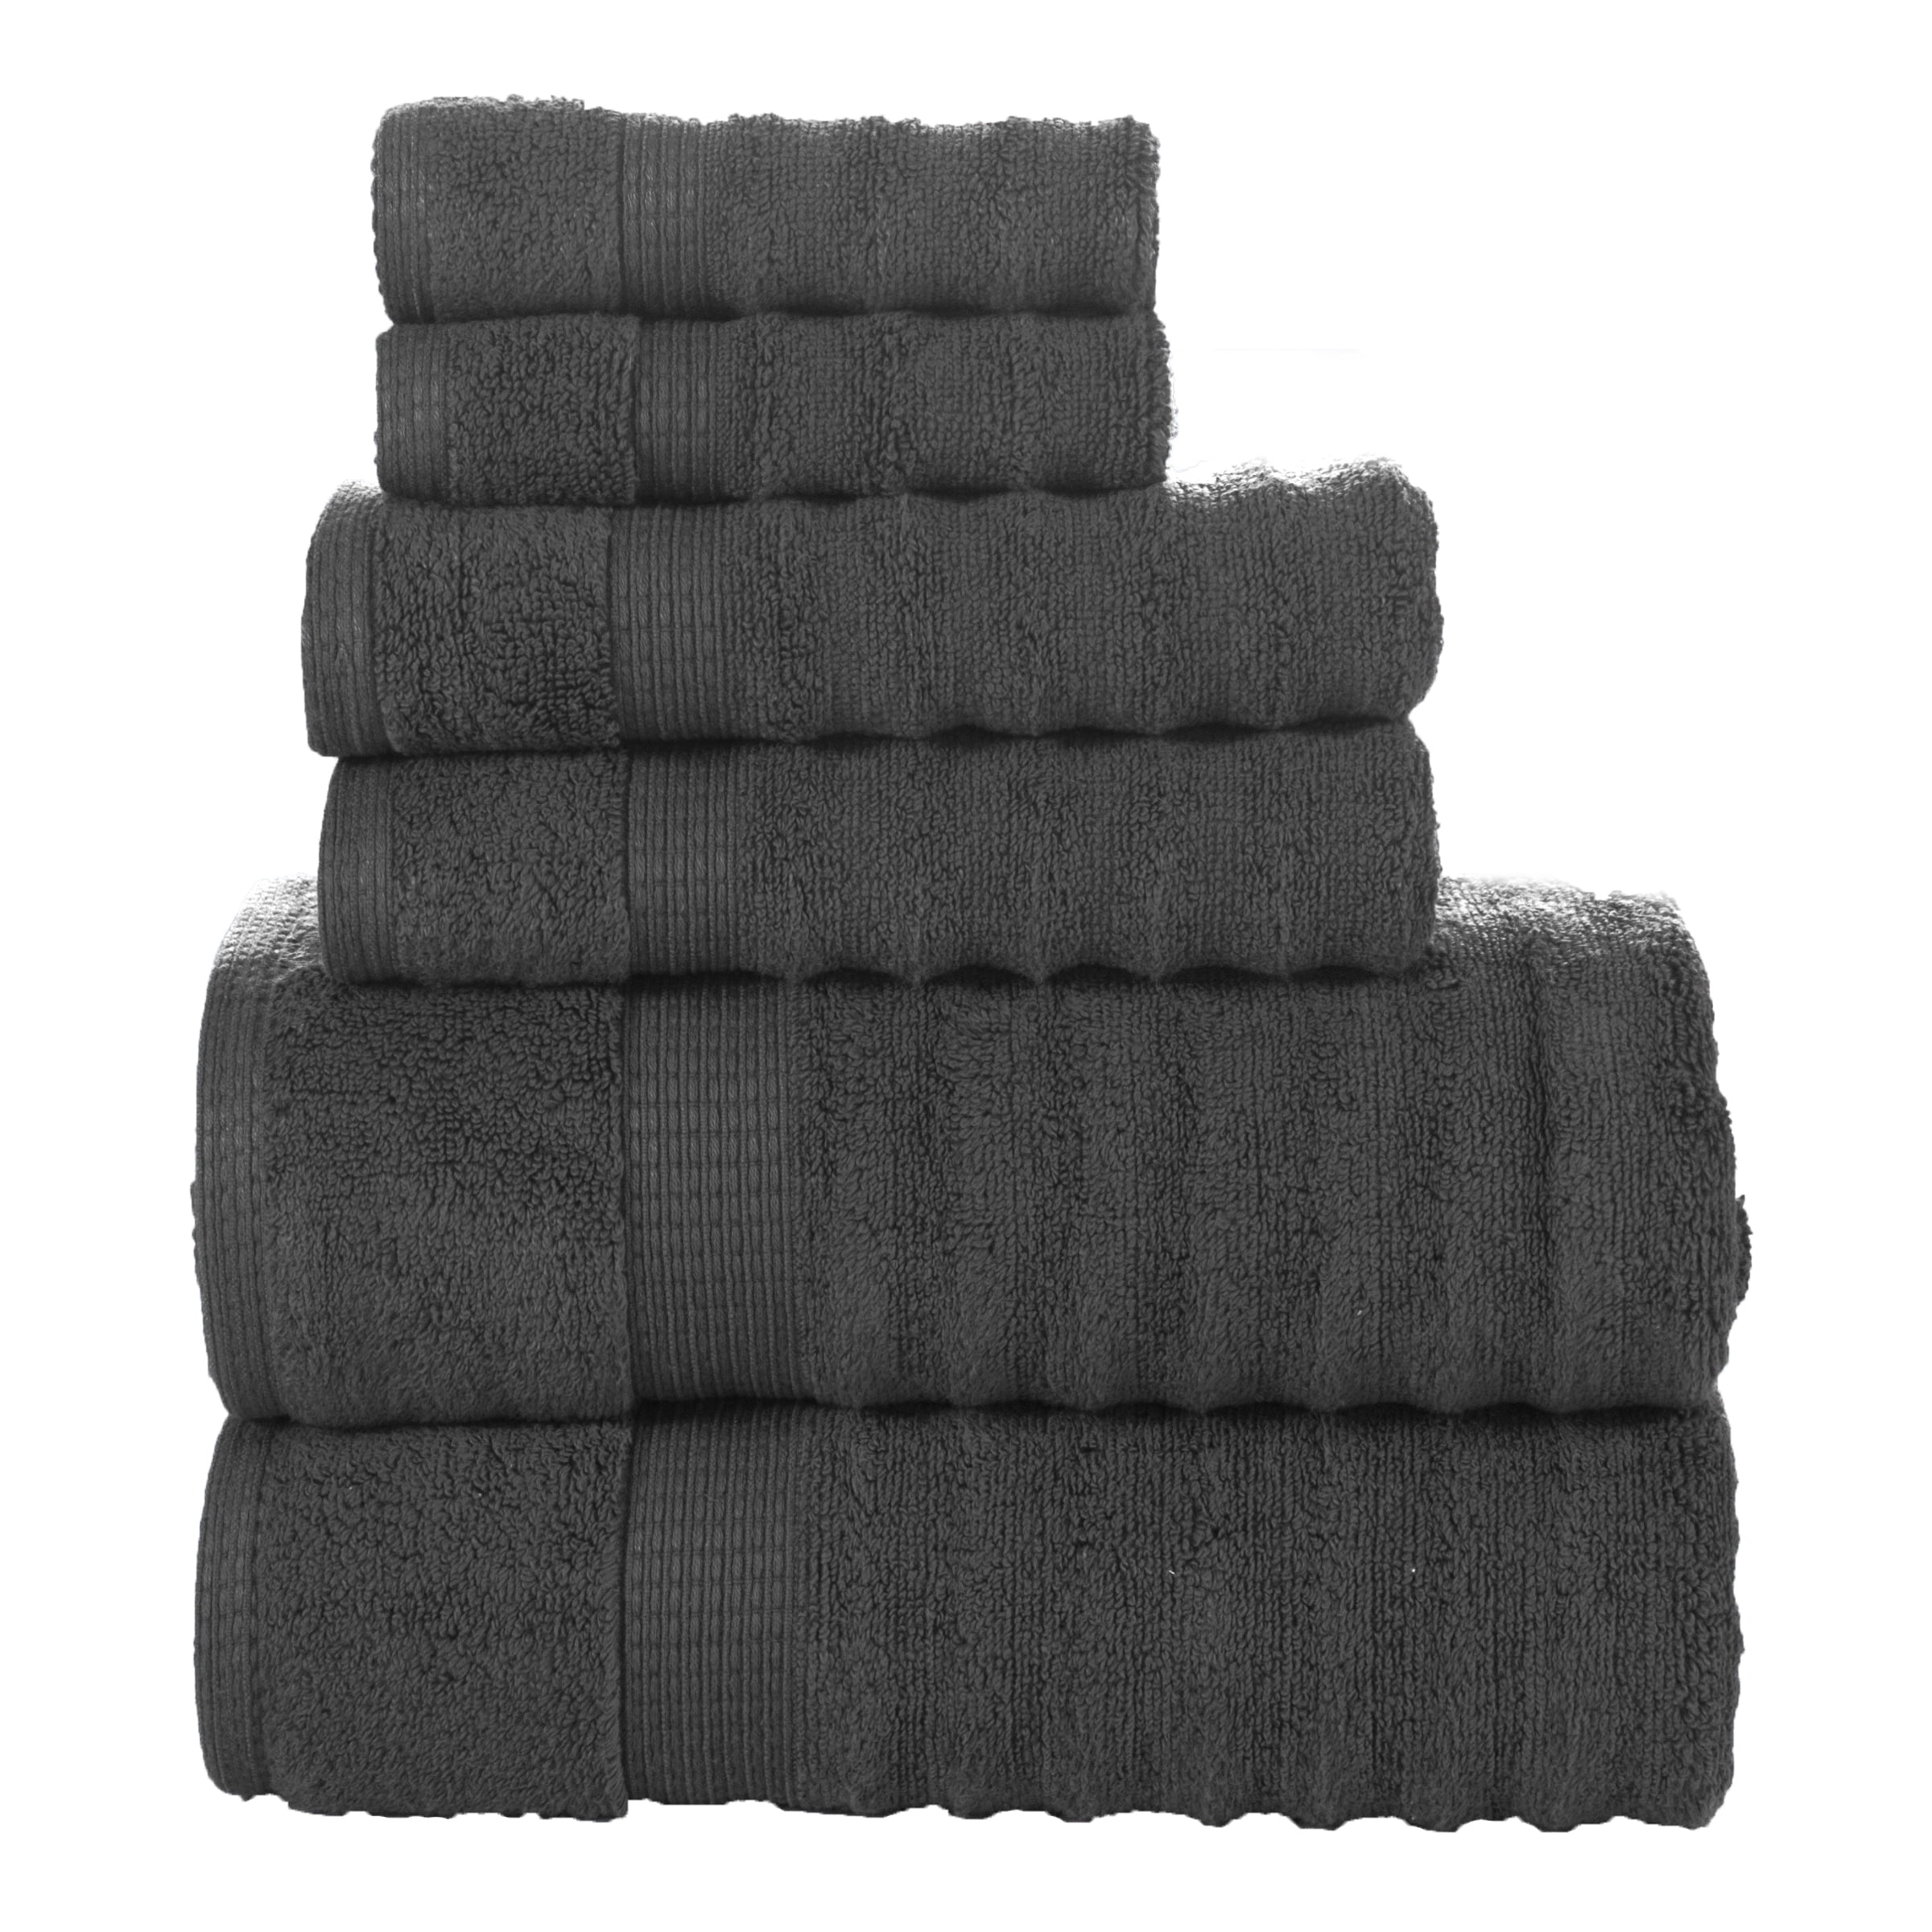 LANE LINEN Bath Towels Set of 6-100% Cotton Bath Towels, Extra Large Bath  Towels, Hotel Towels, 2 Bath Towels Bathroom Sets, 2 Hand Towels for